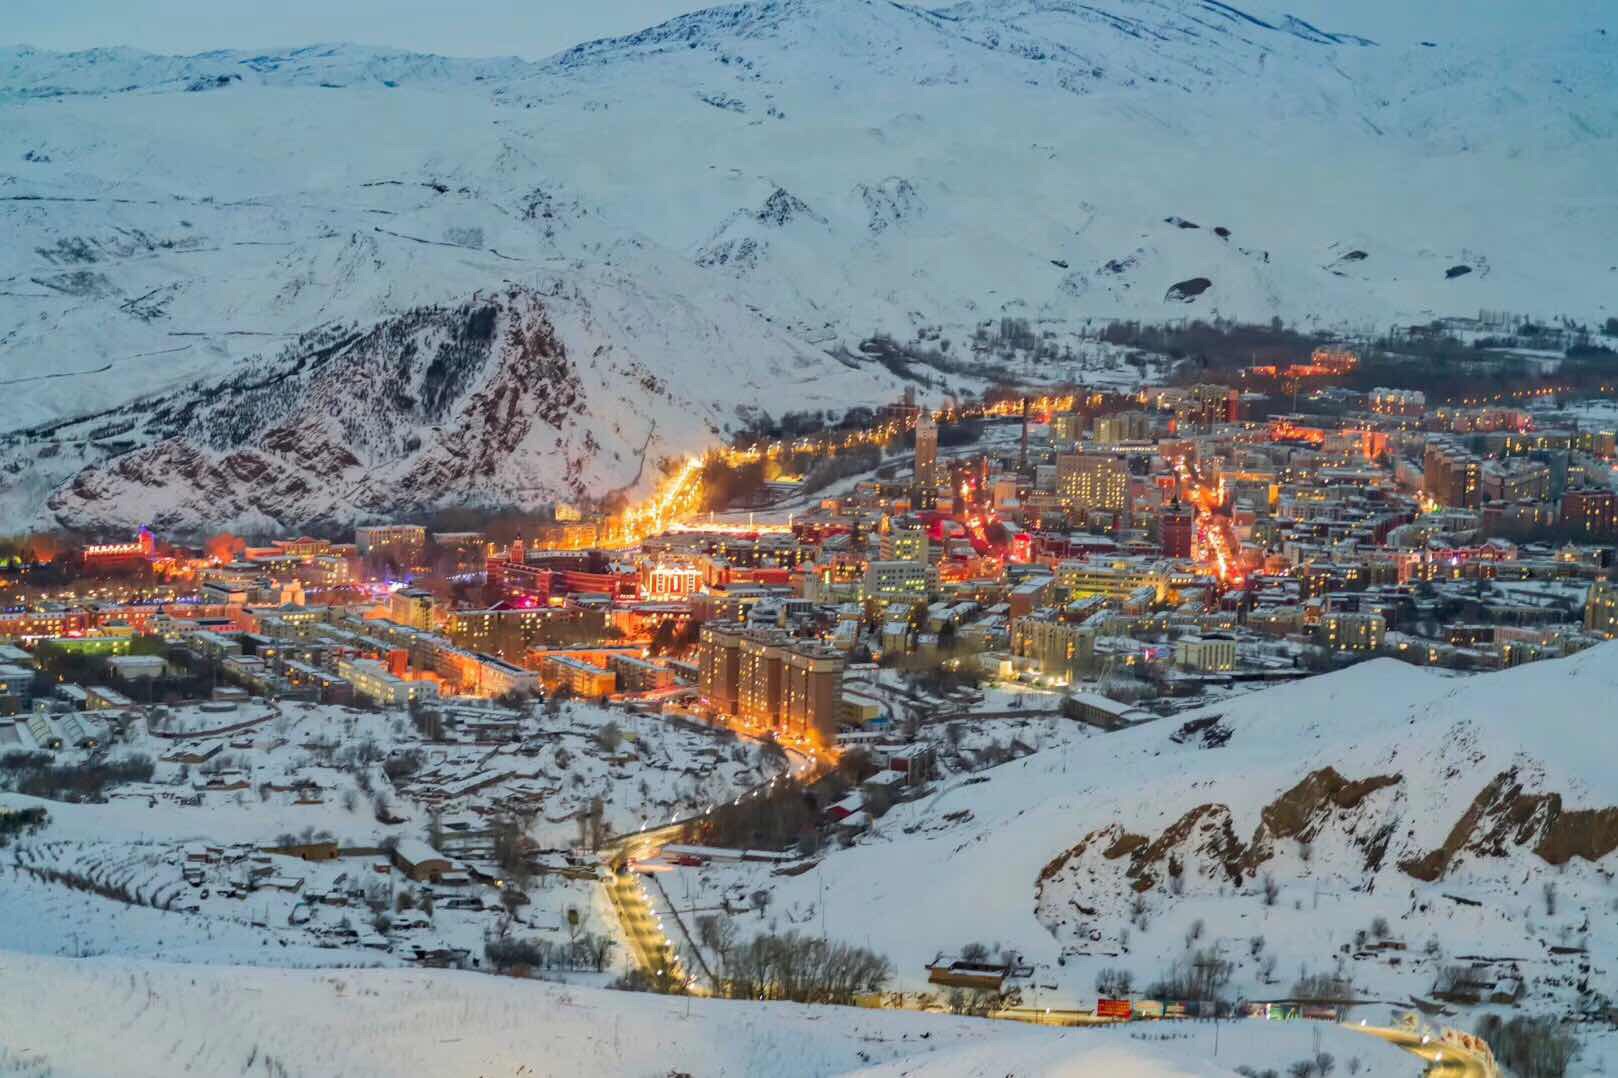 新疆阿勒泰雪场图片